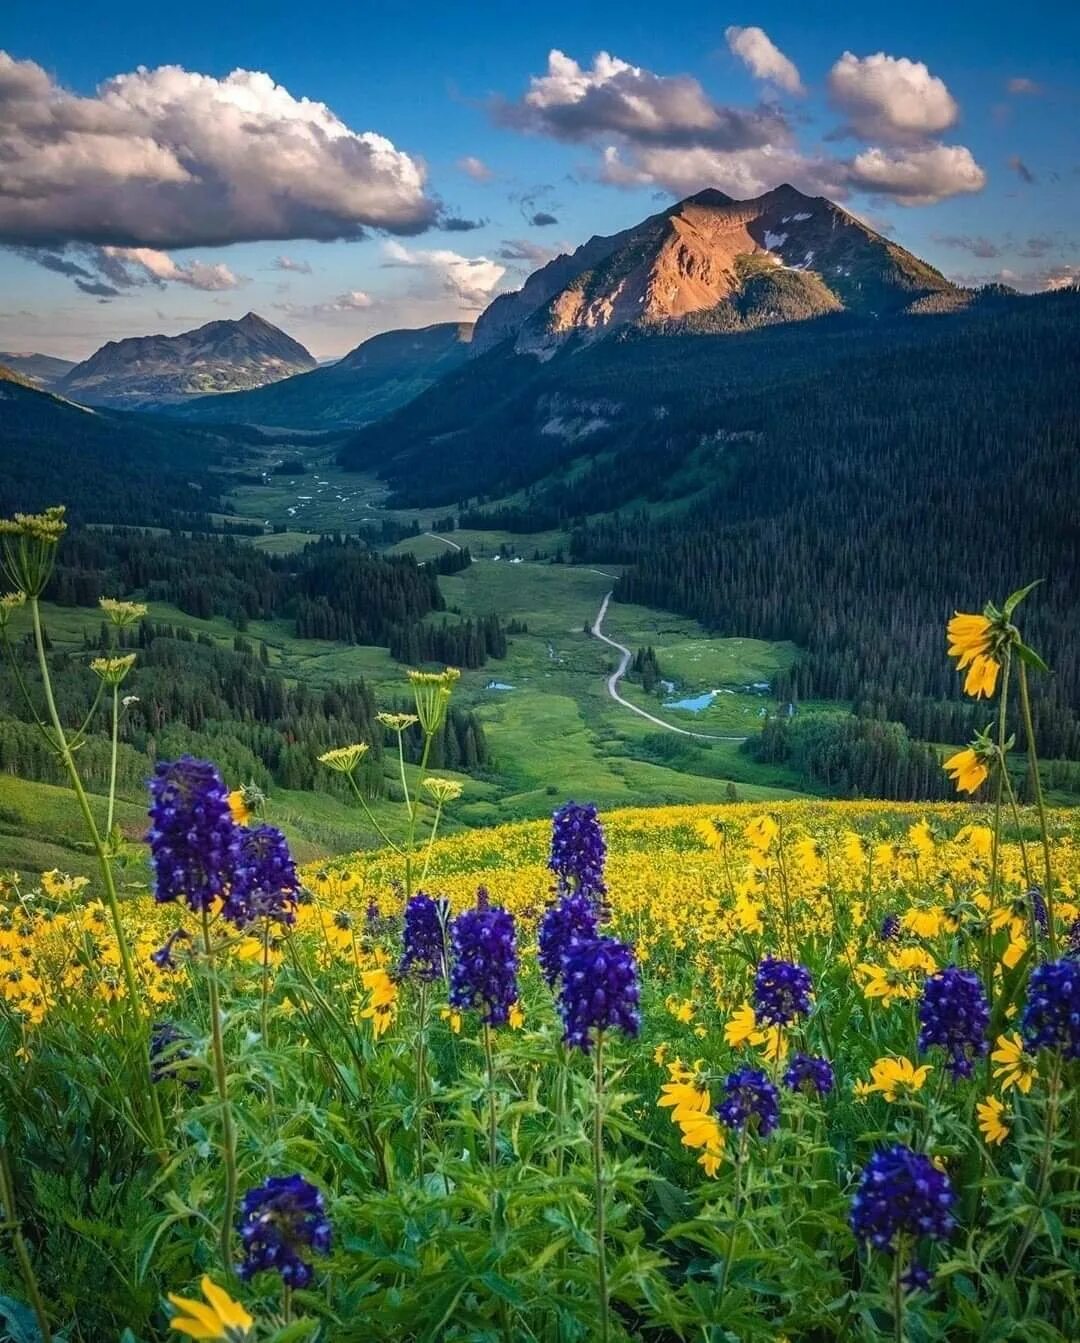 Фото картинки красивые. Национальный парк Олимпик Луга горы цветы Поляна. Природа. Красота природы. Прекрасный мир природы.